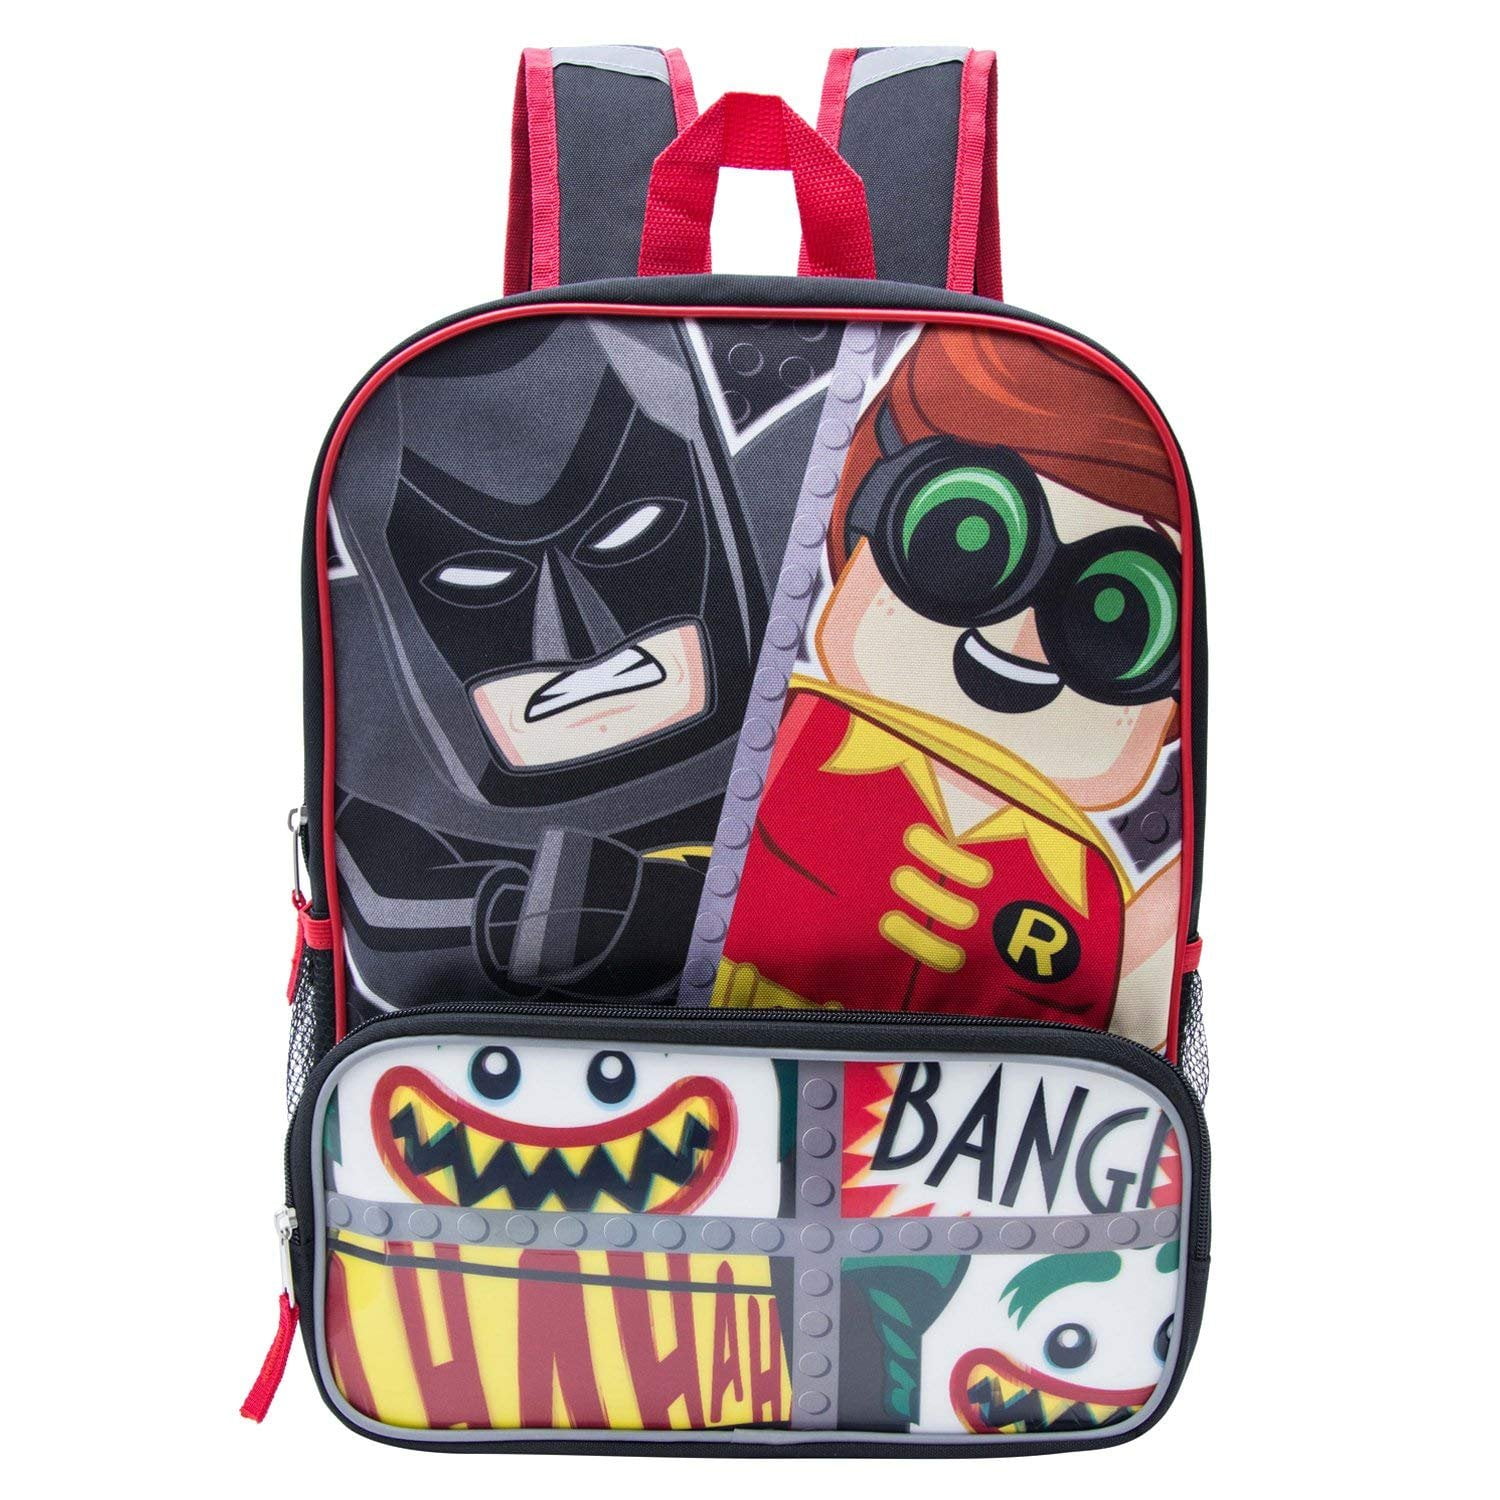 Lego Movie Boys Backpack Lego Batman School Bag 